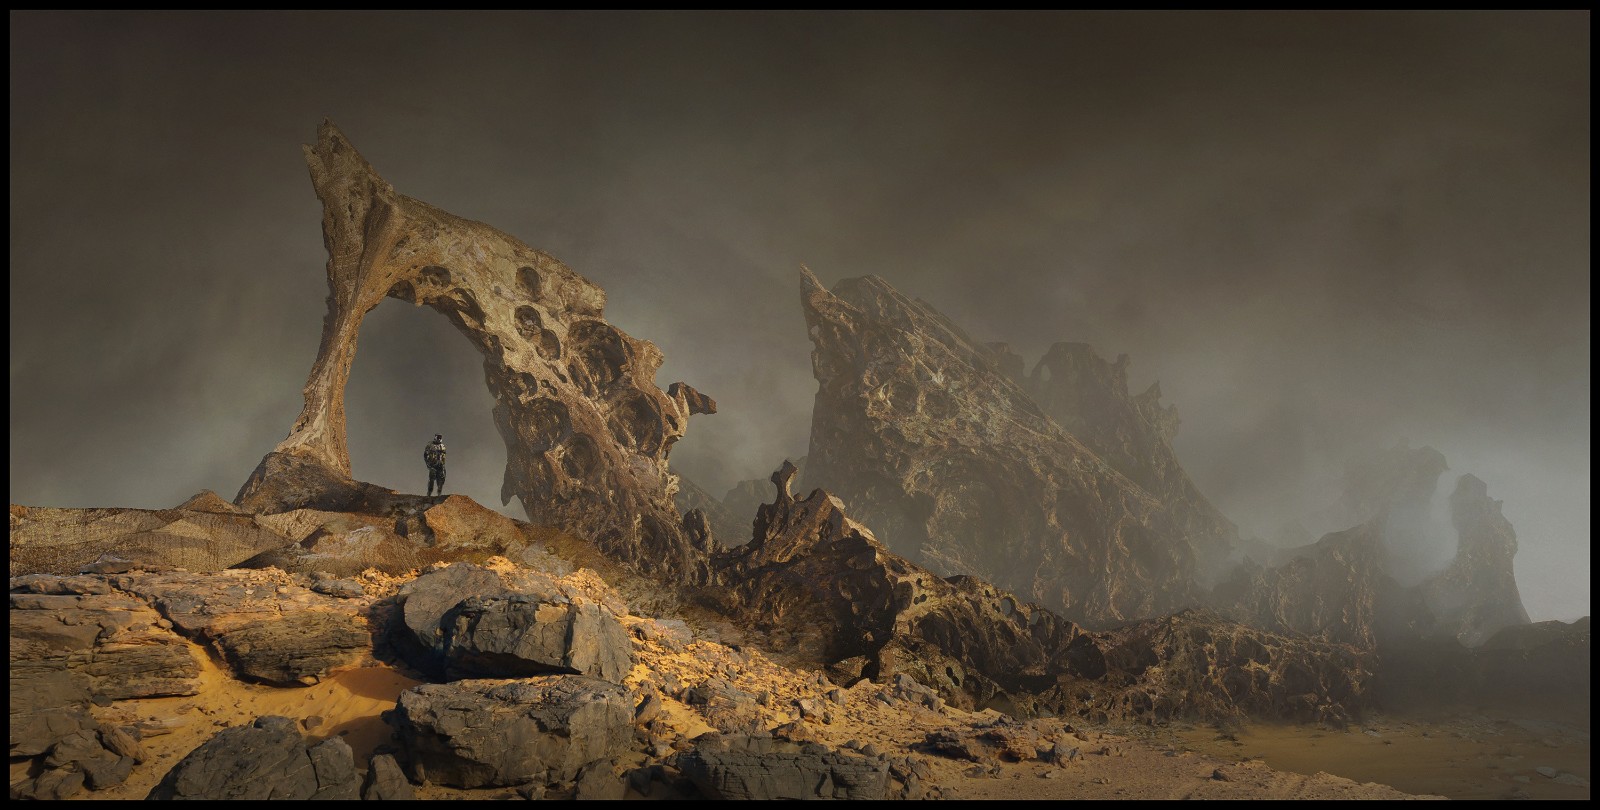 《沙丘》主题开放世界生存游戏概念艺术图曝光